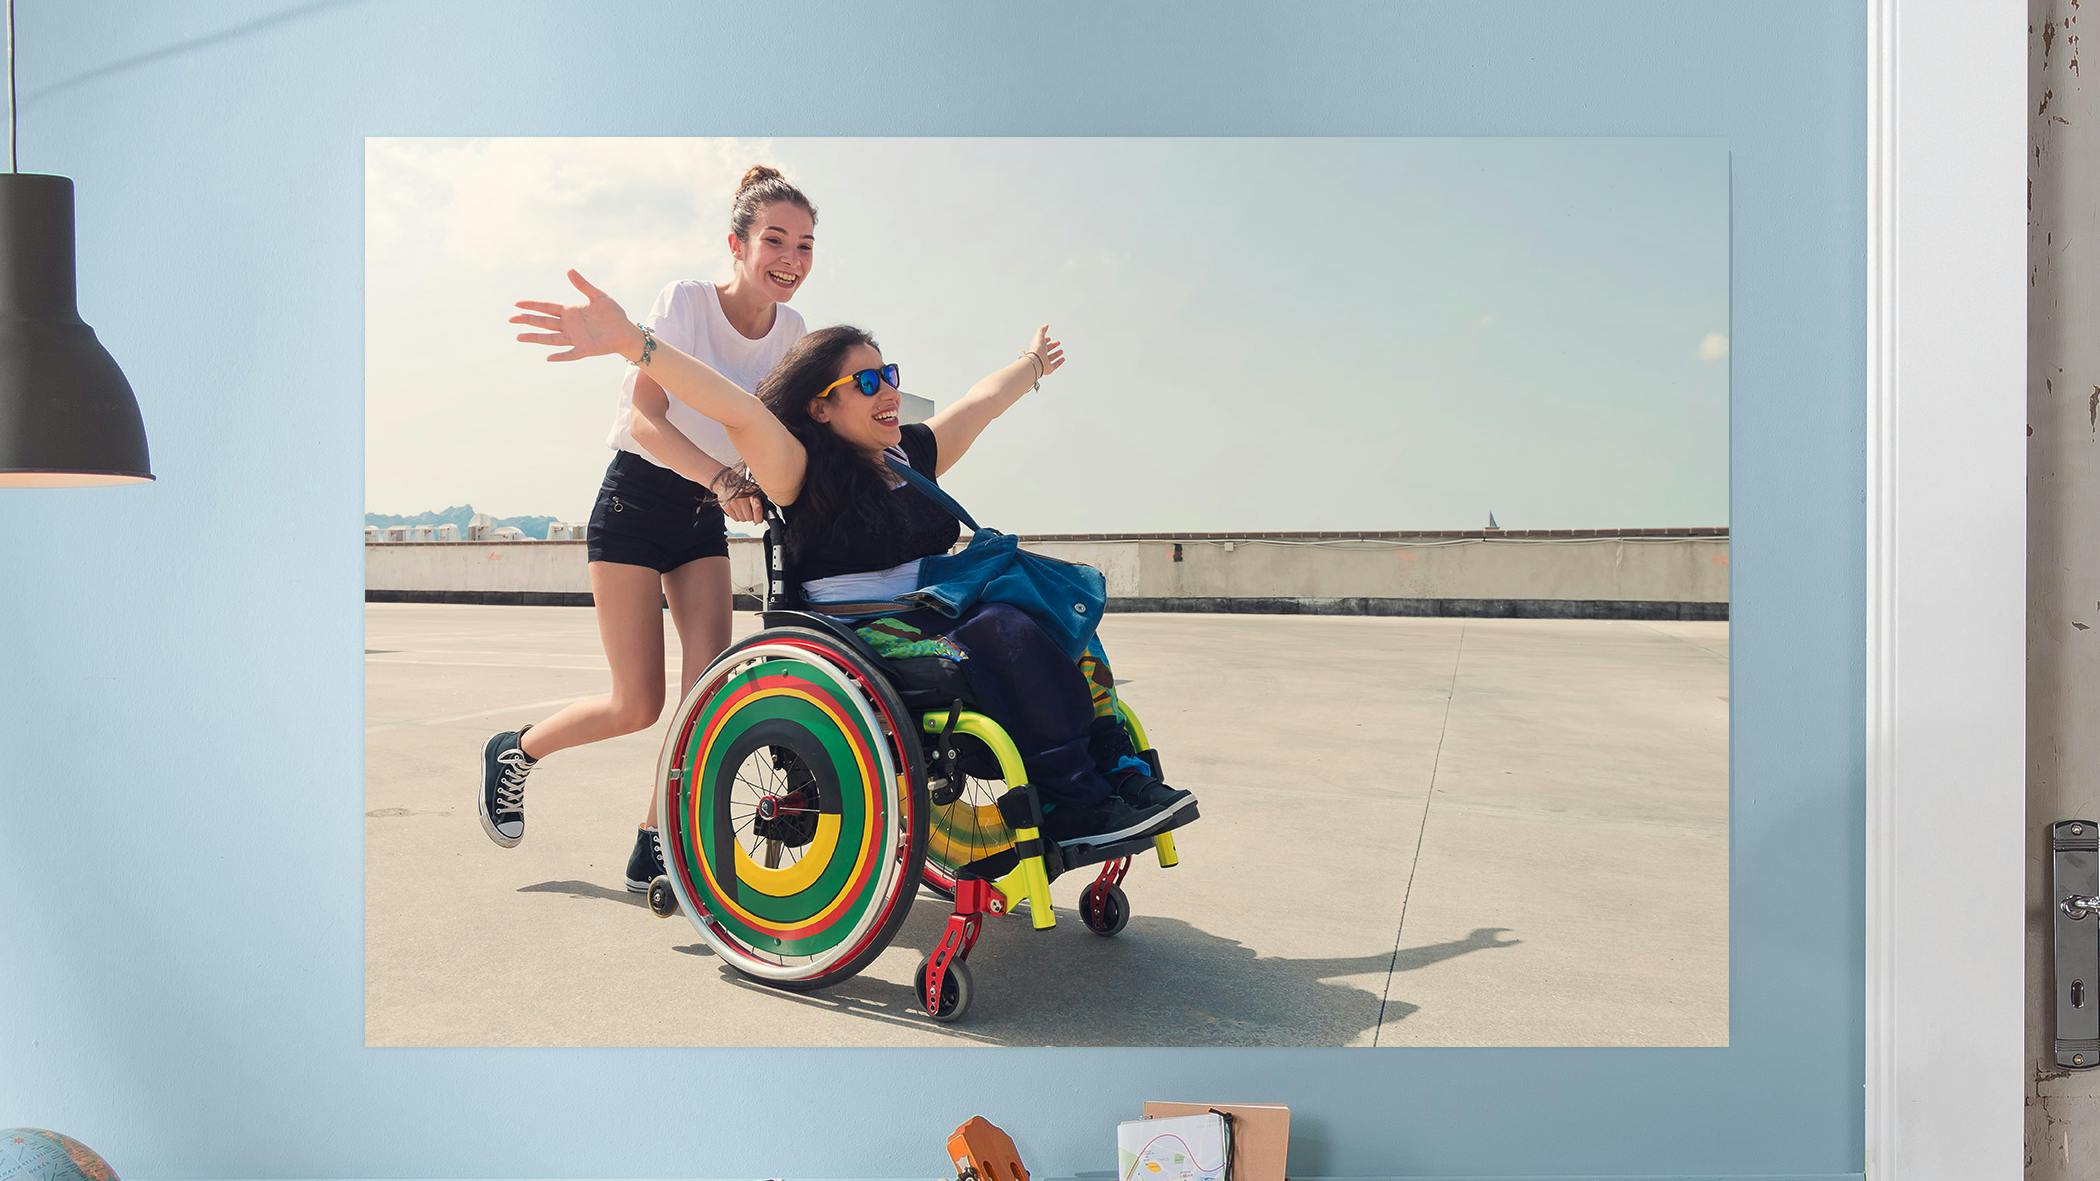 Gepersonaliseerde fotoposter met een foto van twee lachende vriendinnen, een zit in een rolstoel en de andere duwt de rolstoel